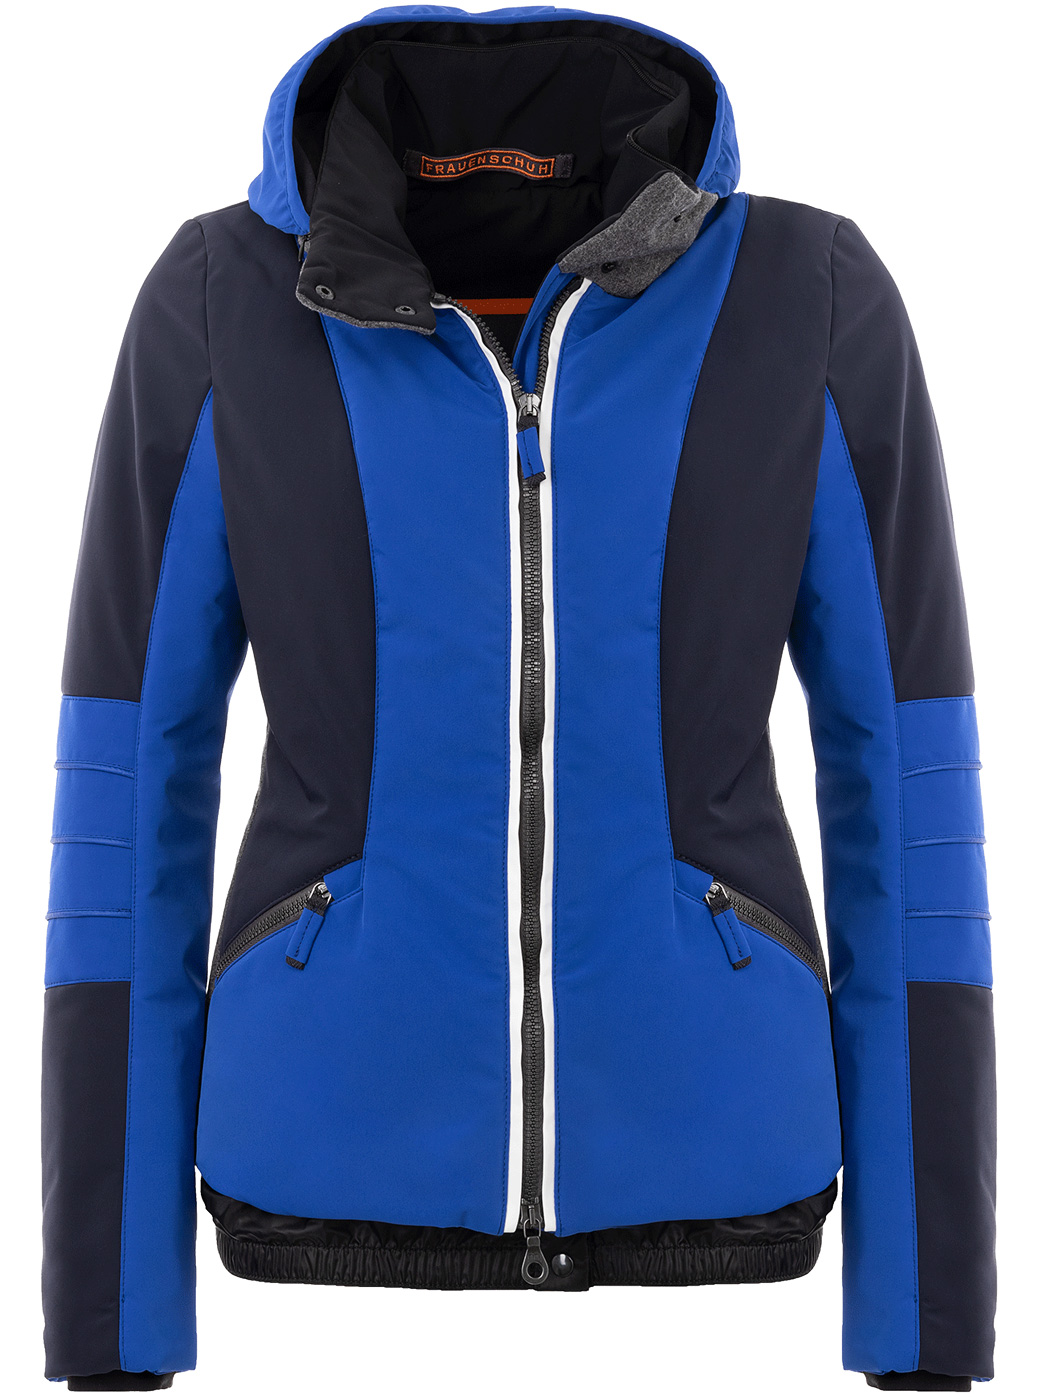 Frauenschuh MathildaMulti - Ski Jackets - buy online at Sport Gardena